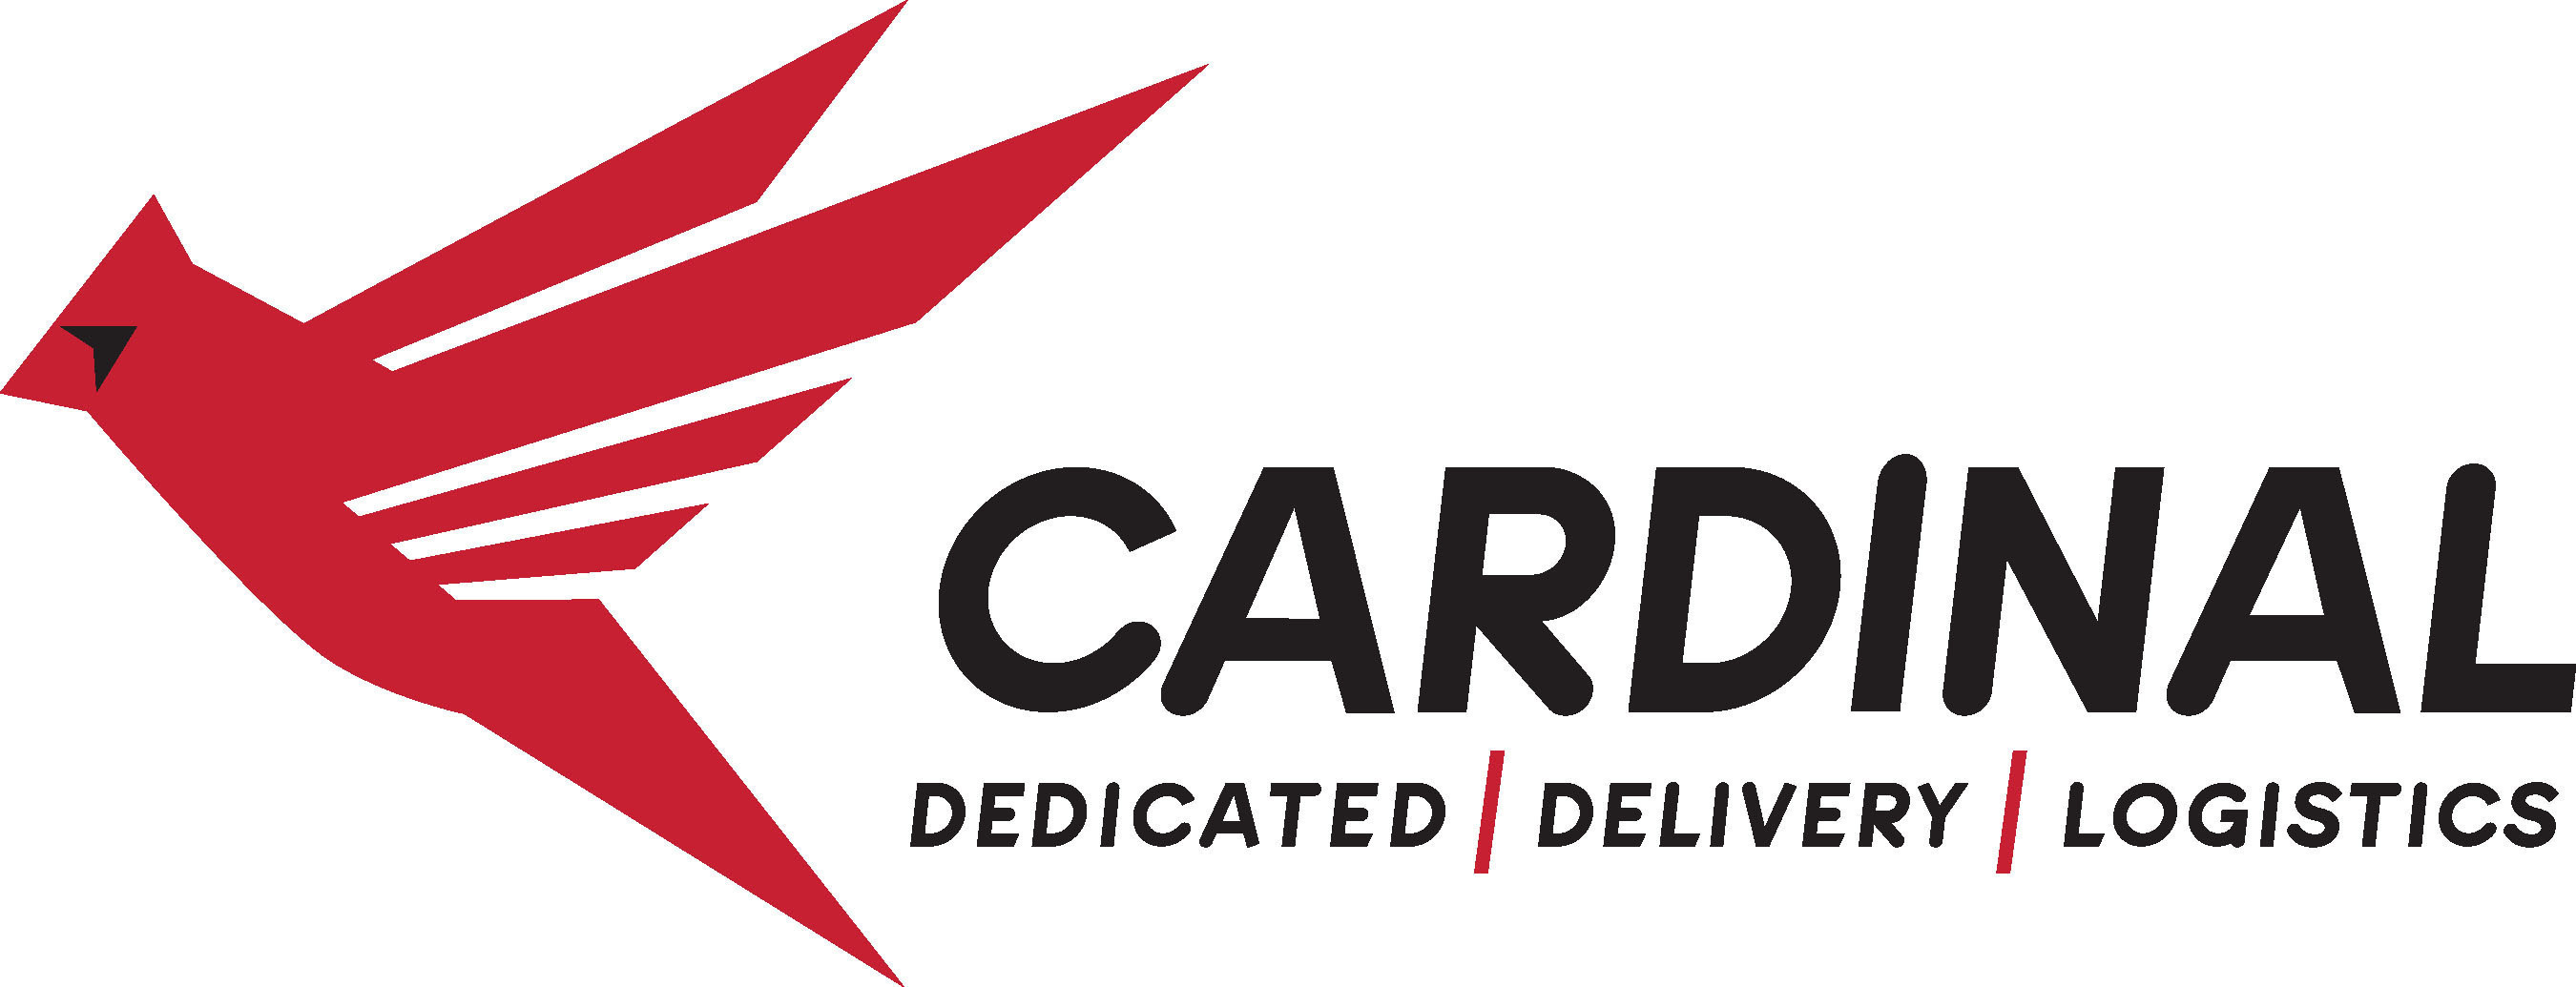 CARDINAL LOGISTICS MANAGEMENT CORPORATION. (PRNewsFoto/Cardinal Logistics Management Corporation) (PRNewsFoto/CARDINAL LOGISTICS MANAGEMENT...)